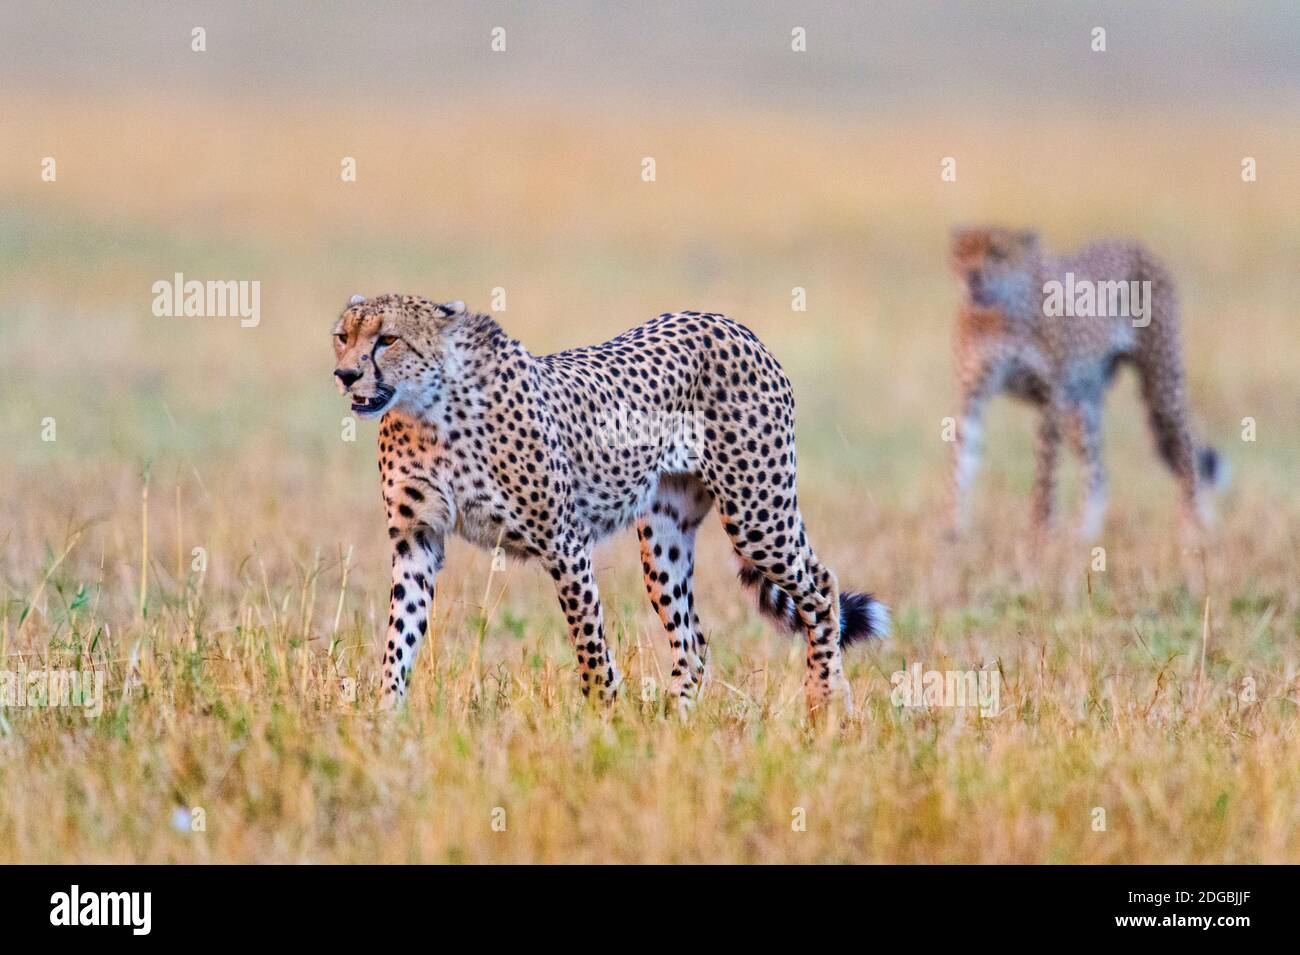 Cheetahs (Acinonyx jubatus) marchant dans une forêt, Parc national du Serengeti, Tanzanie Banque D'Images